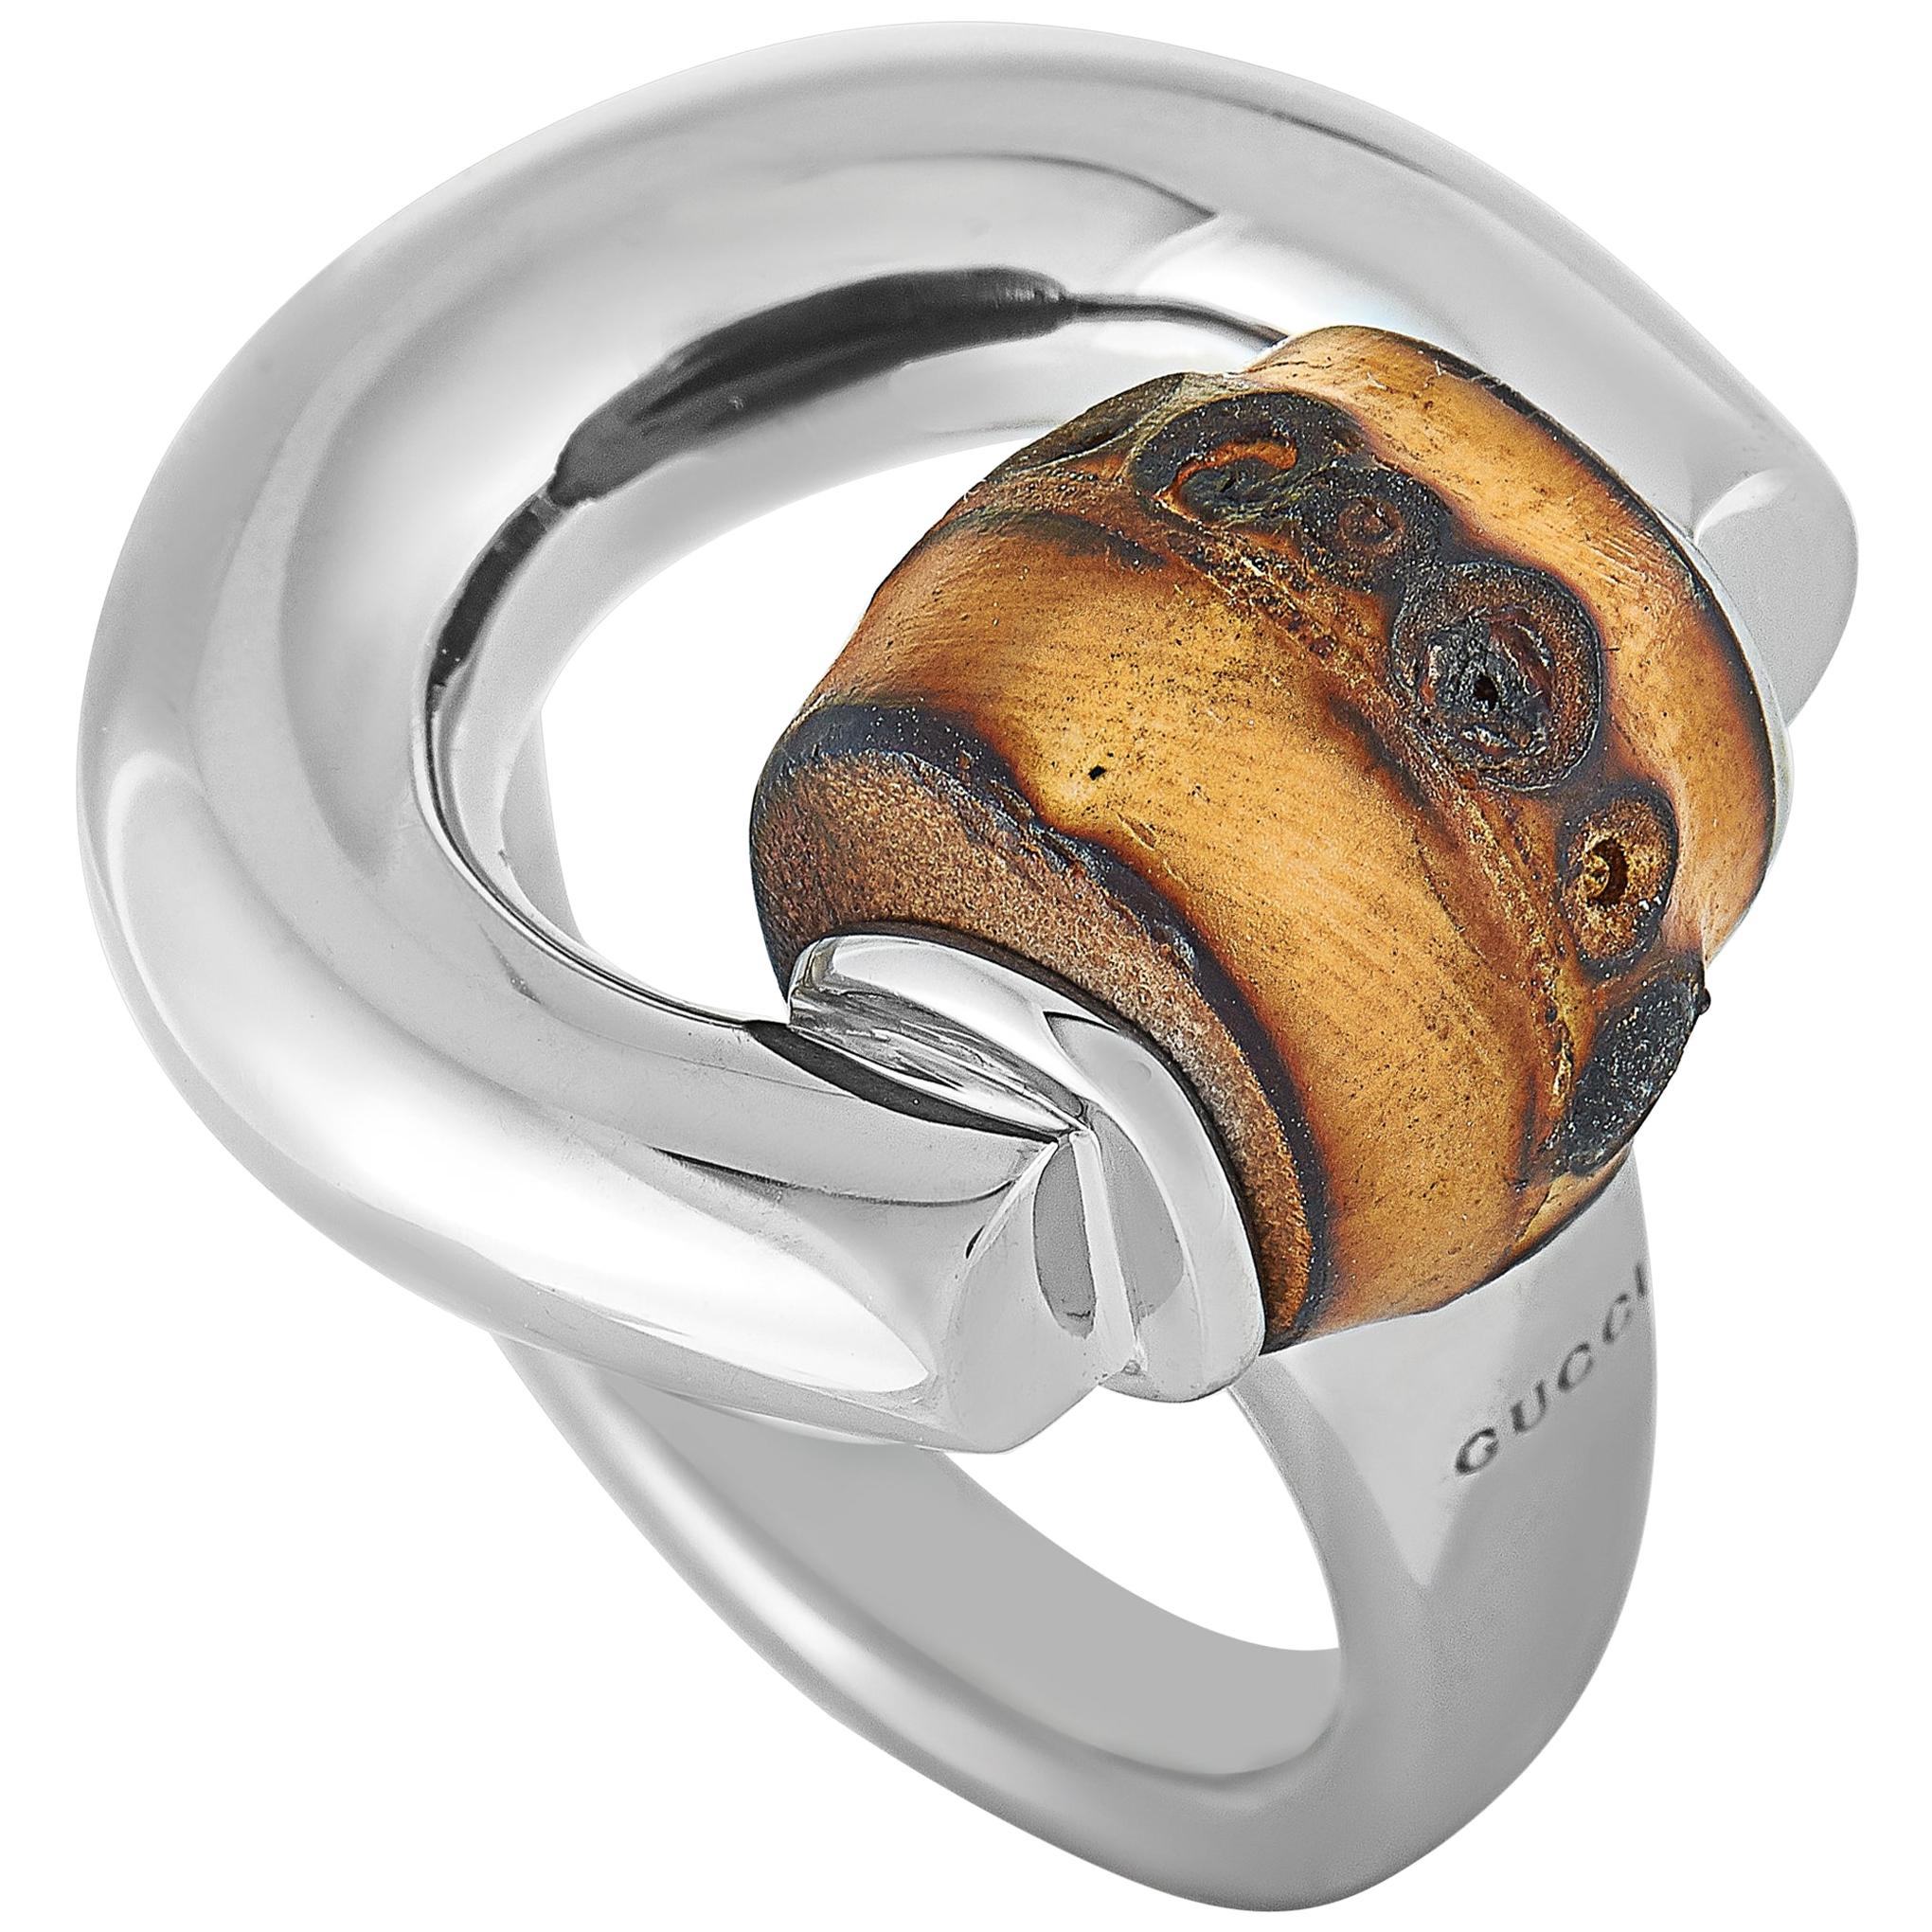 Gucci Bamboo Silver and Natural Bamboo Horsebit Ring